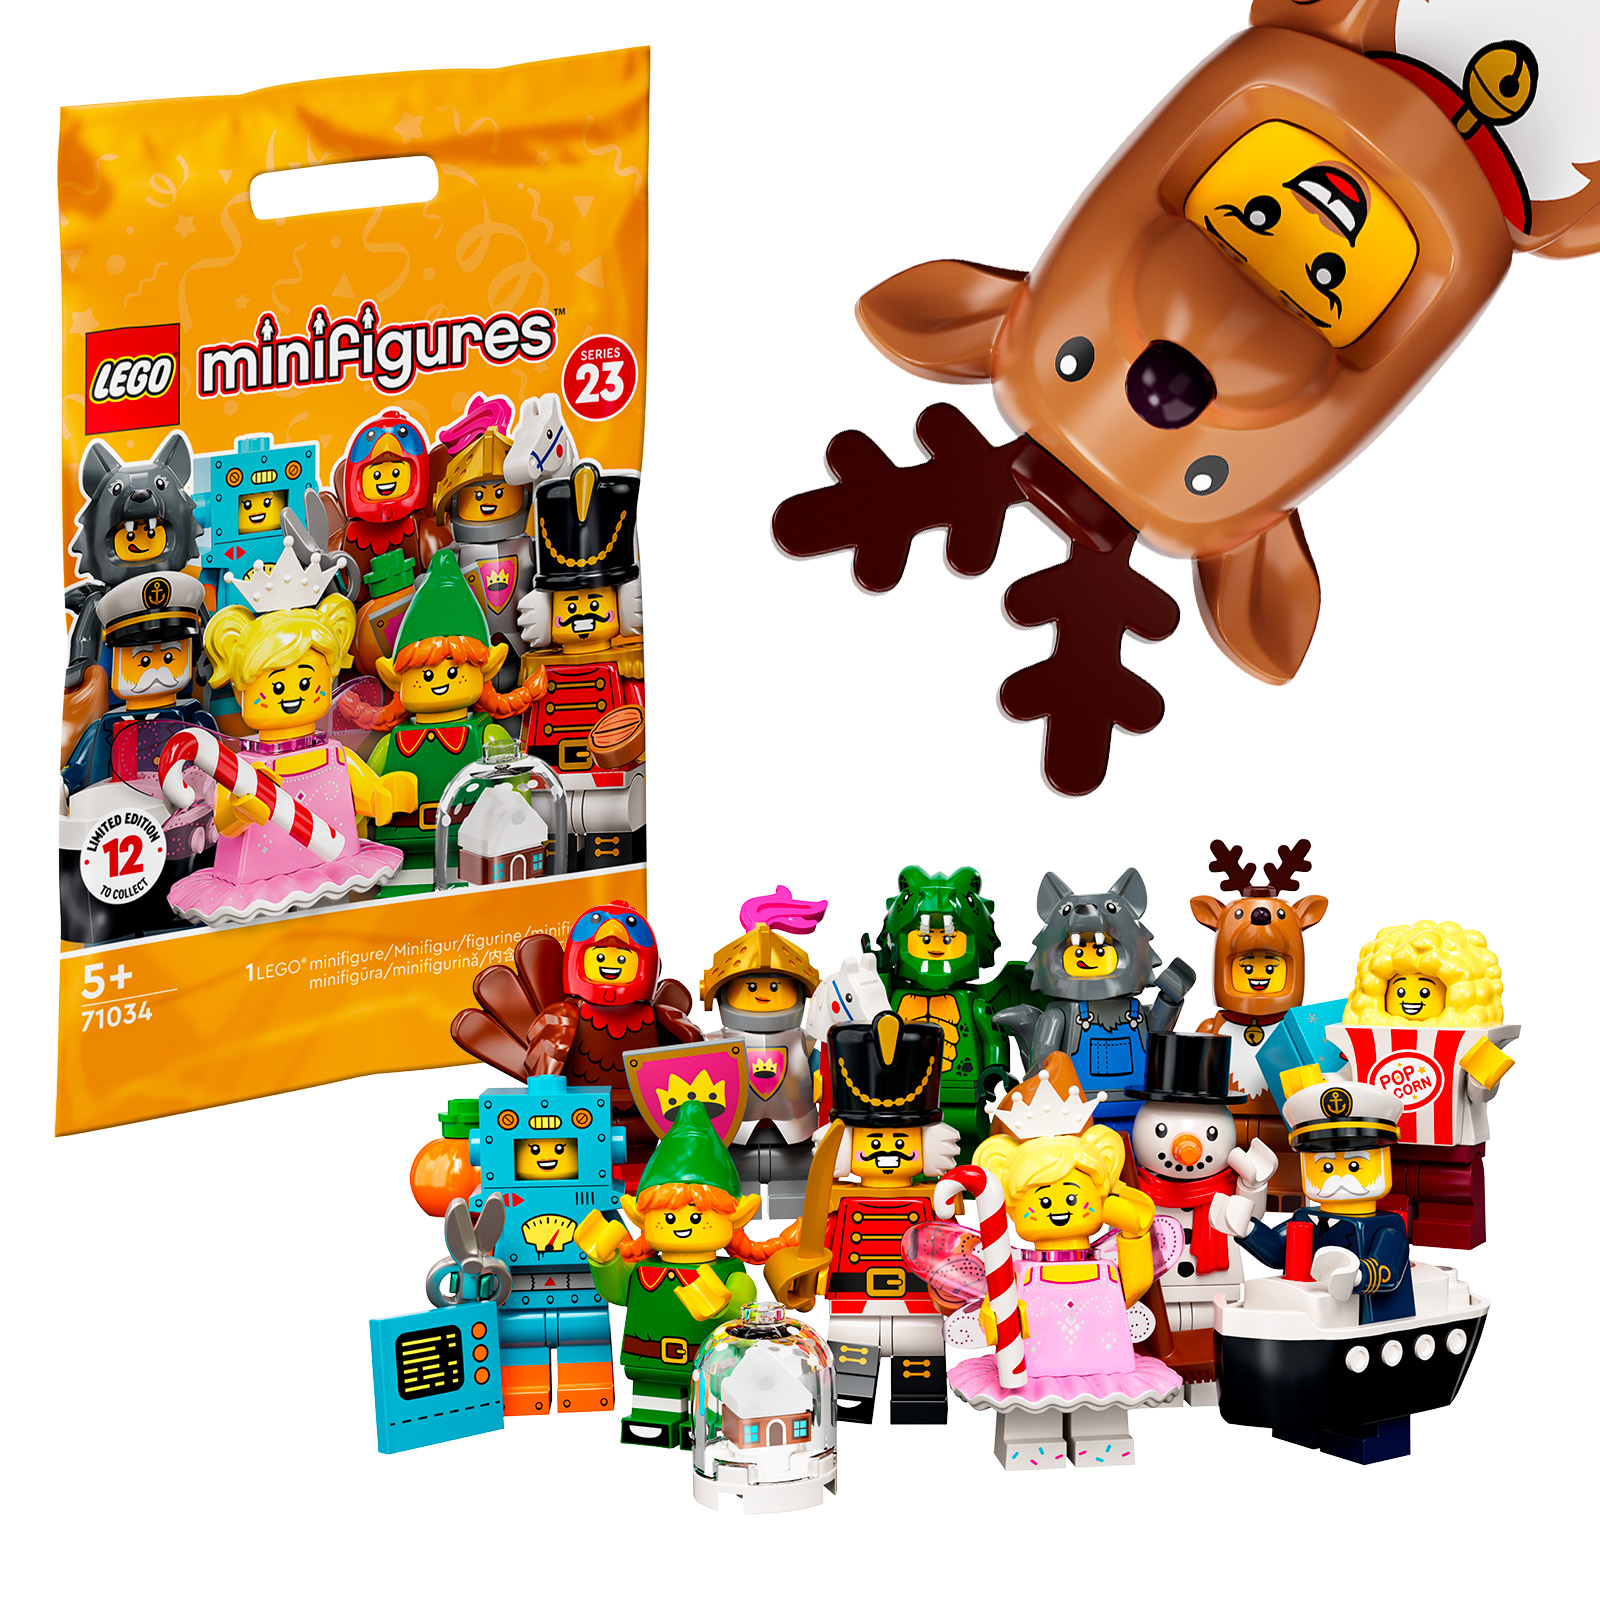 LEGO 71034 keräilyminihahmot -sarja 23: kaikki hahmot ovat kaupassa